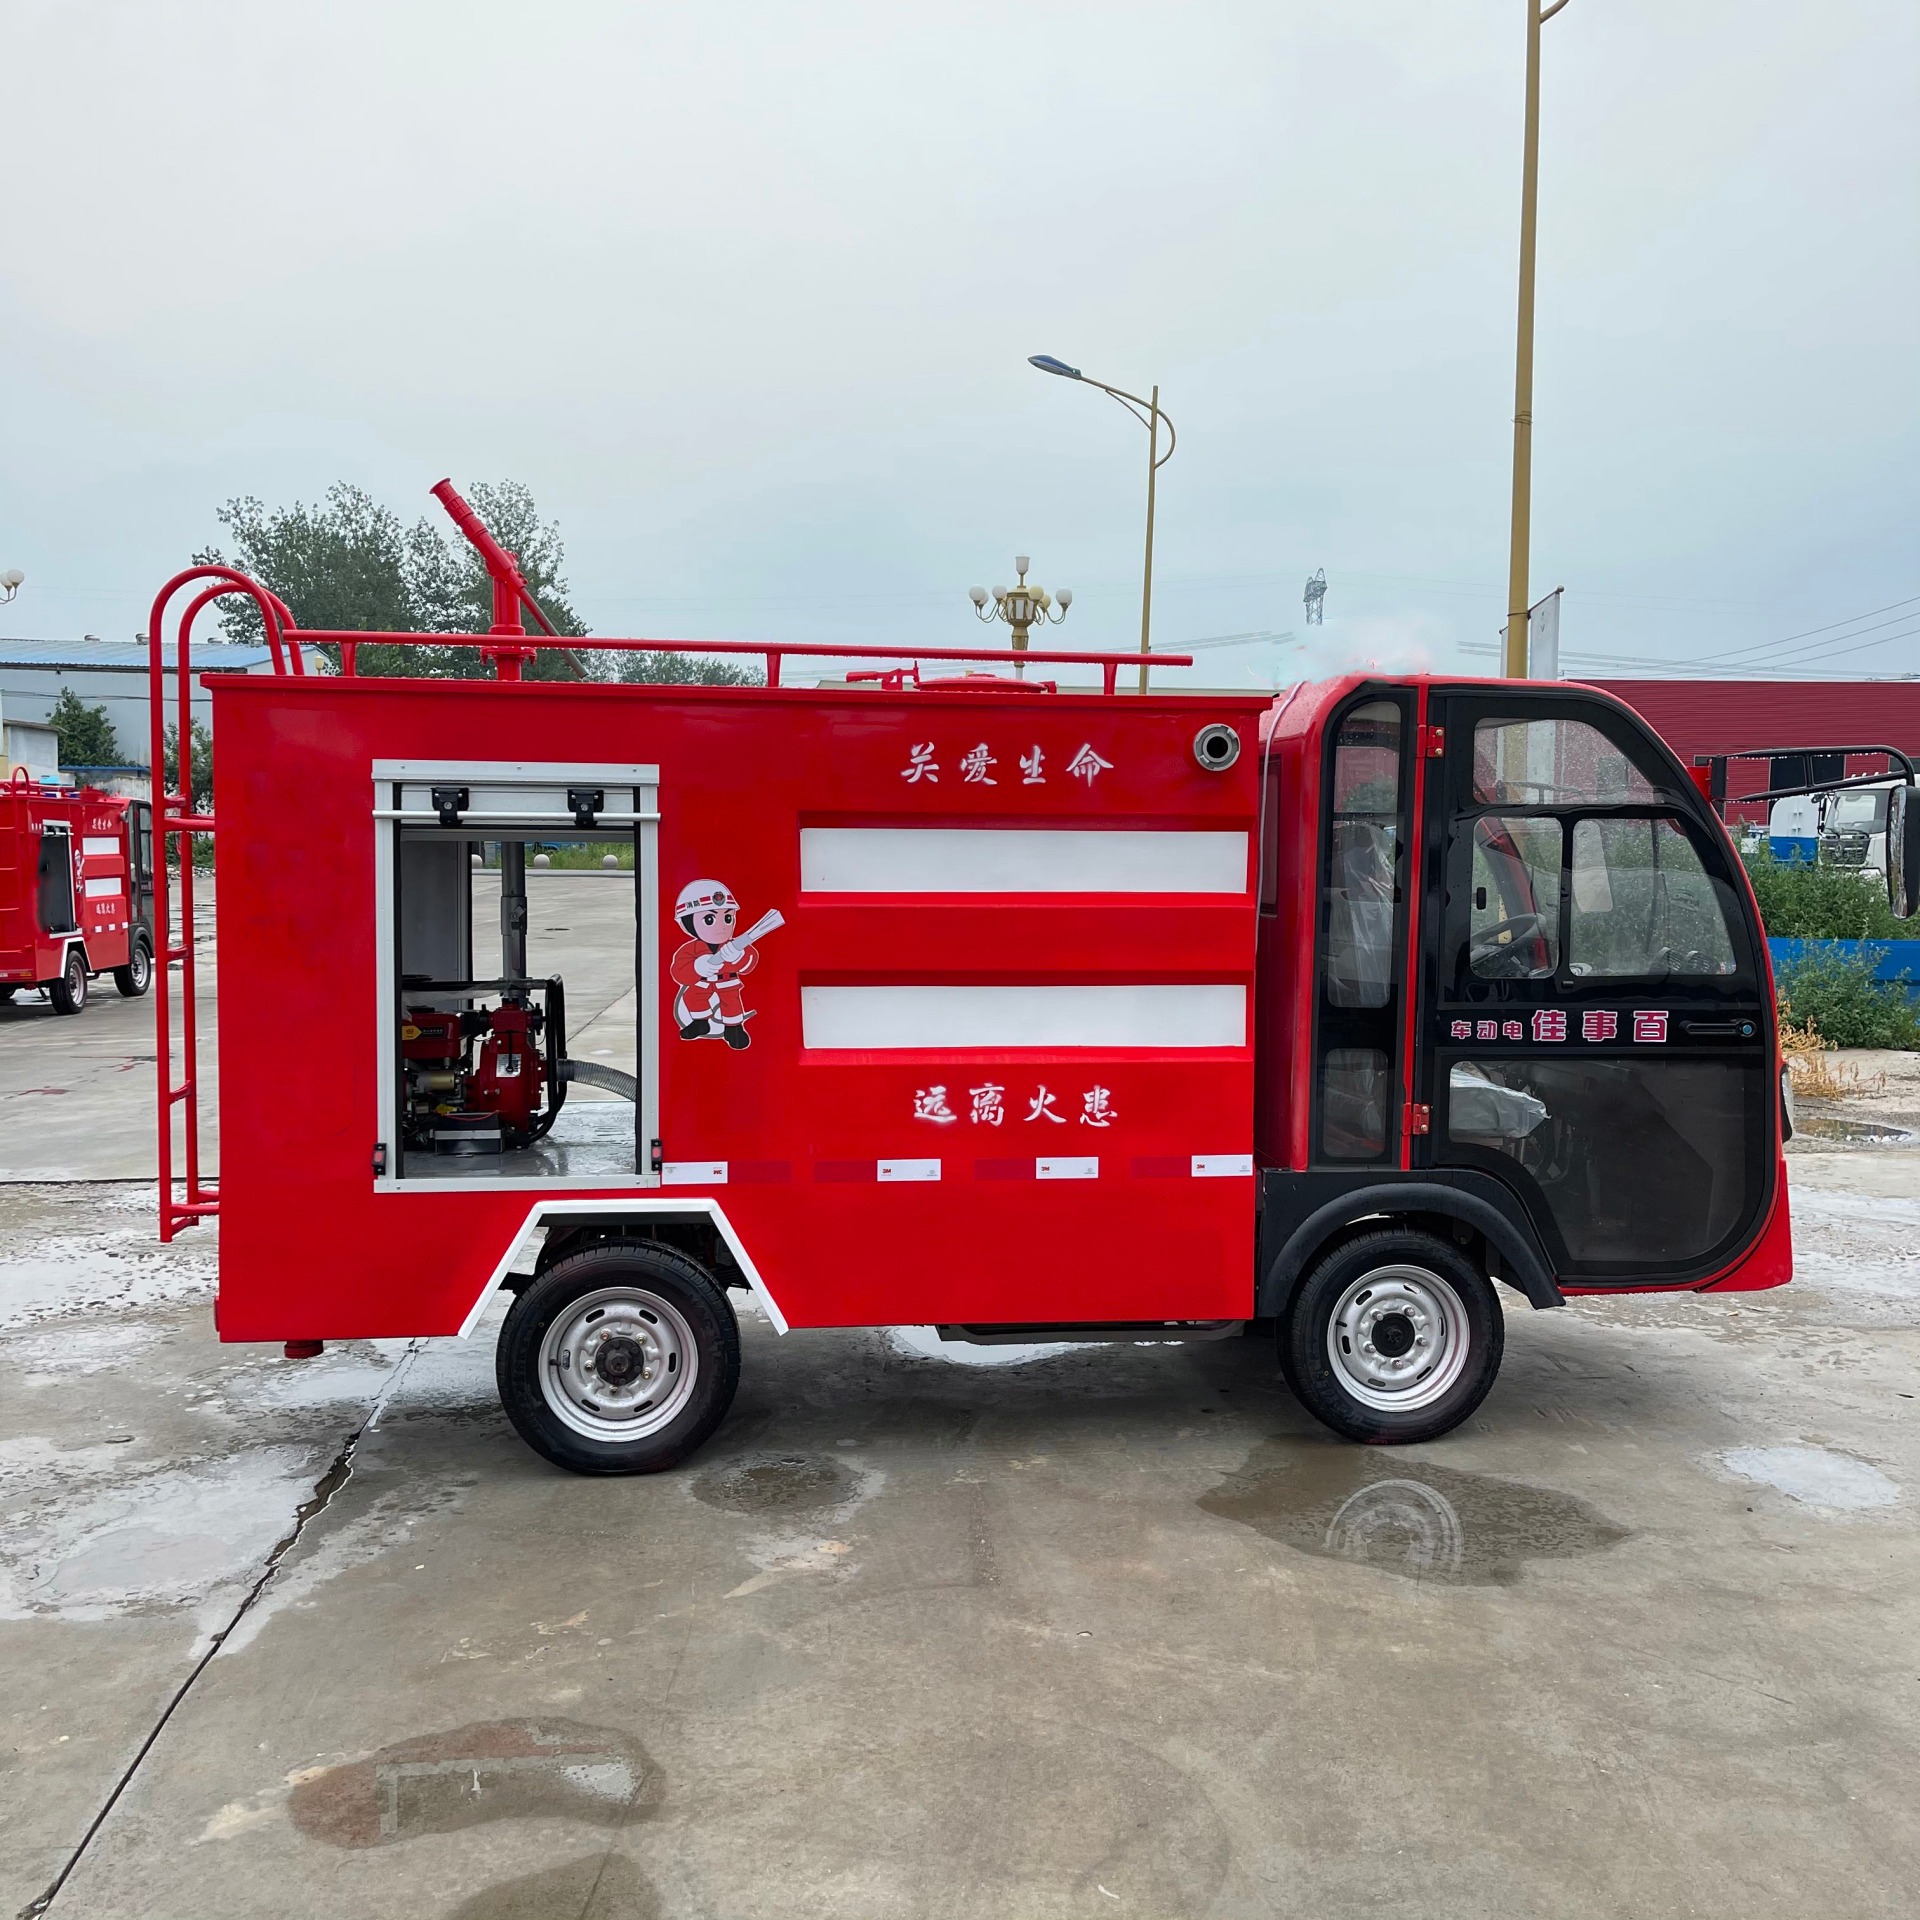 小型水罐消防车 应急巡逻车 装超威电池 轻松驾驶 物业景区使用 中运威